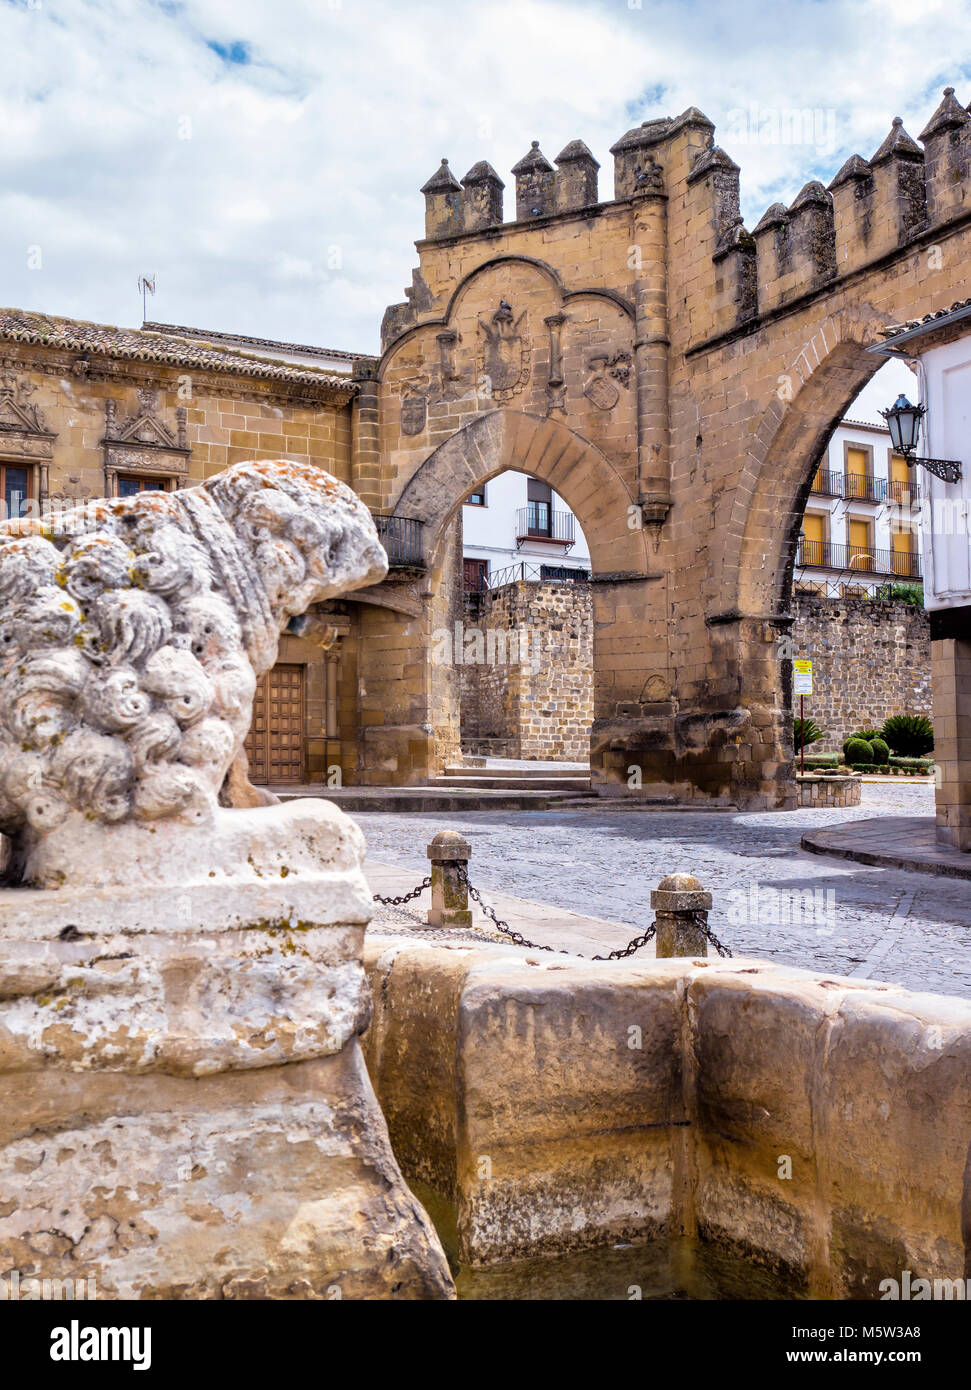 Plaza del Pópulo con la Fuente romana de los Leones, la Puerta de Jaén y el Arco de Villalar. Baeza. Jaén. Andalucía. España Stock Photo